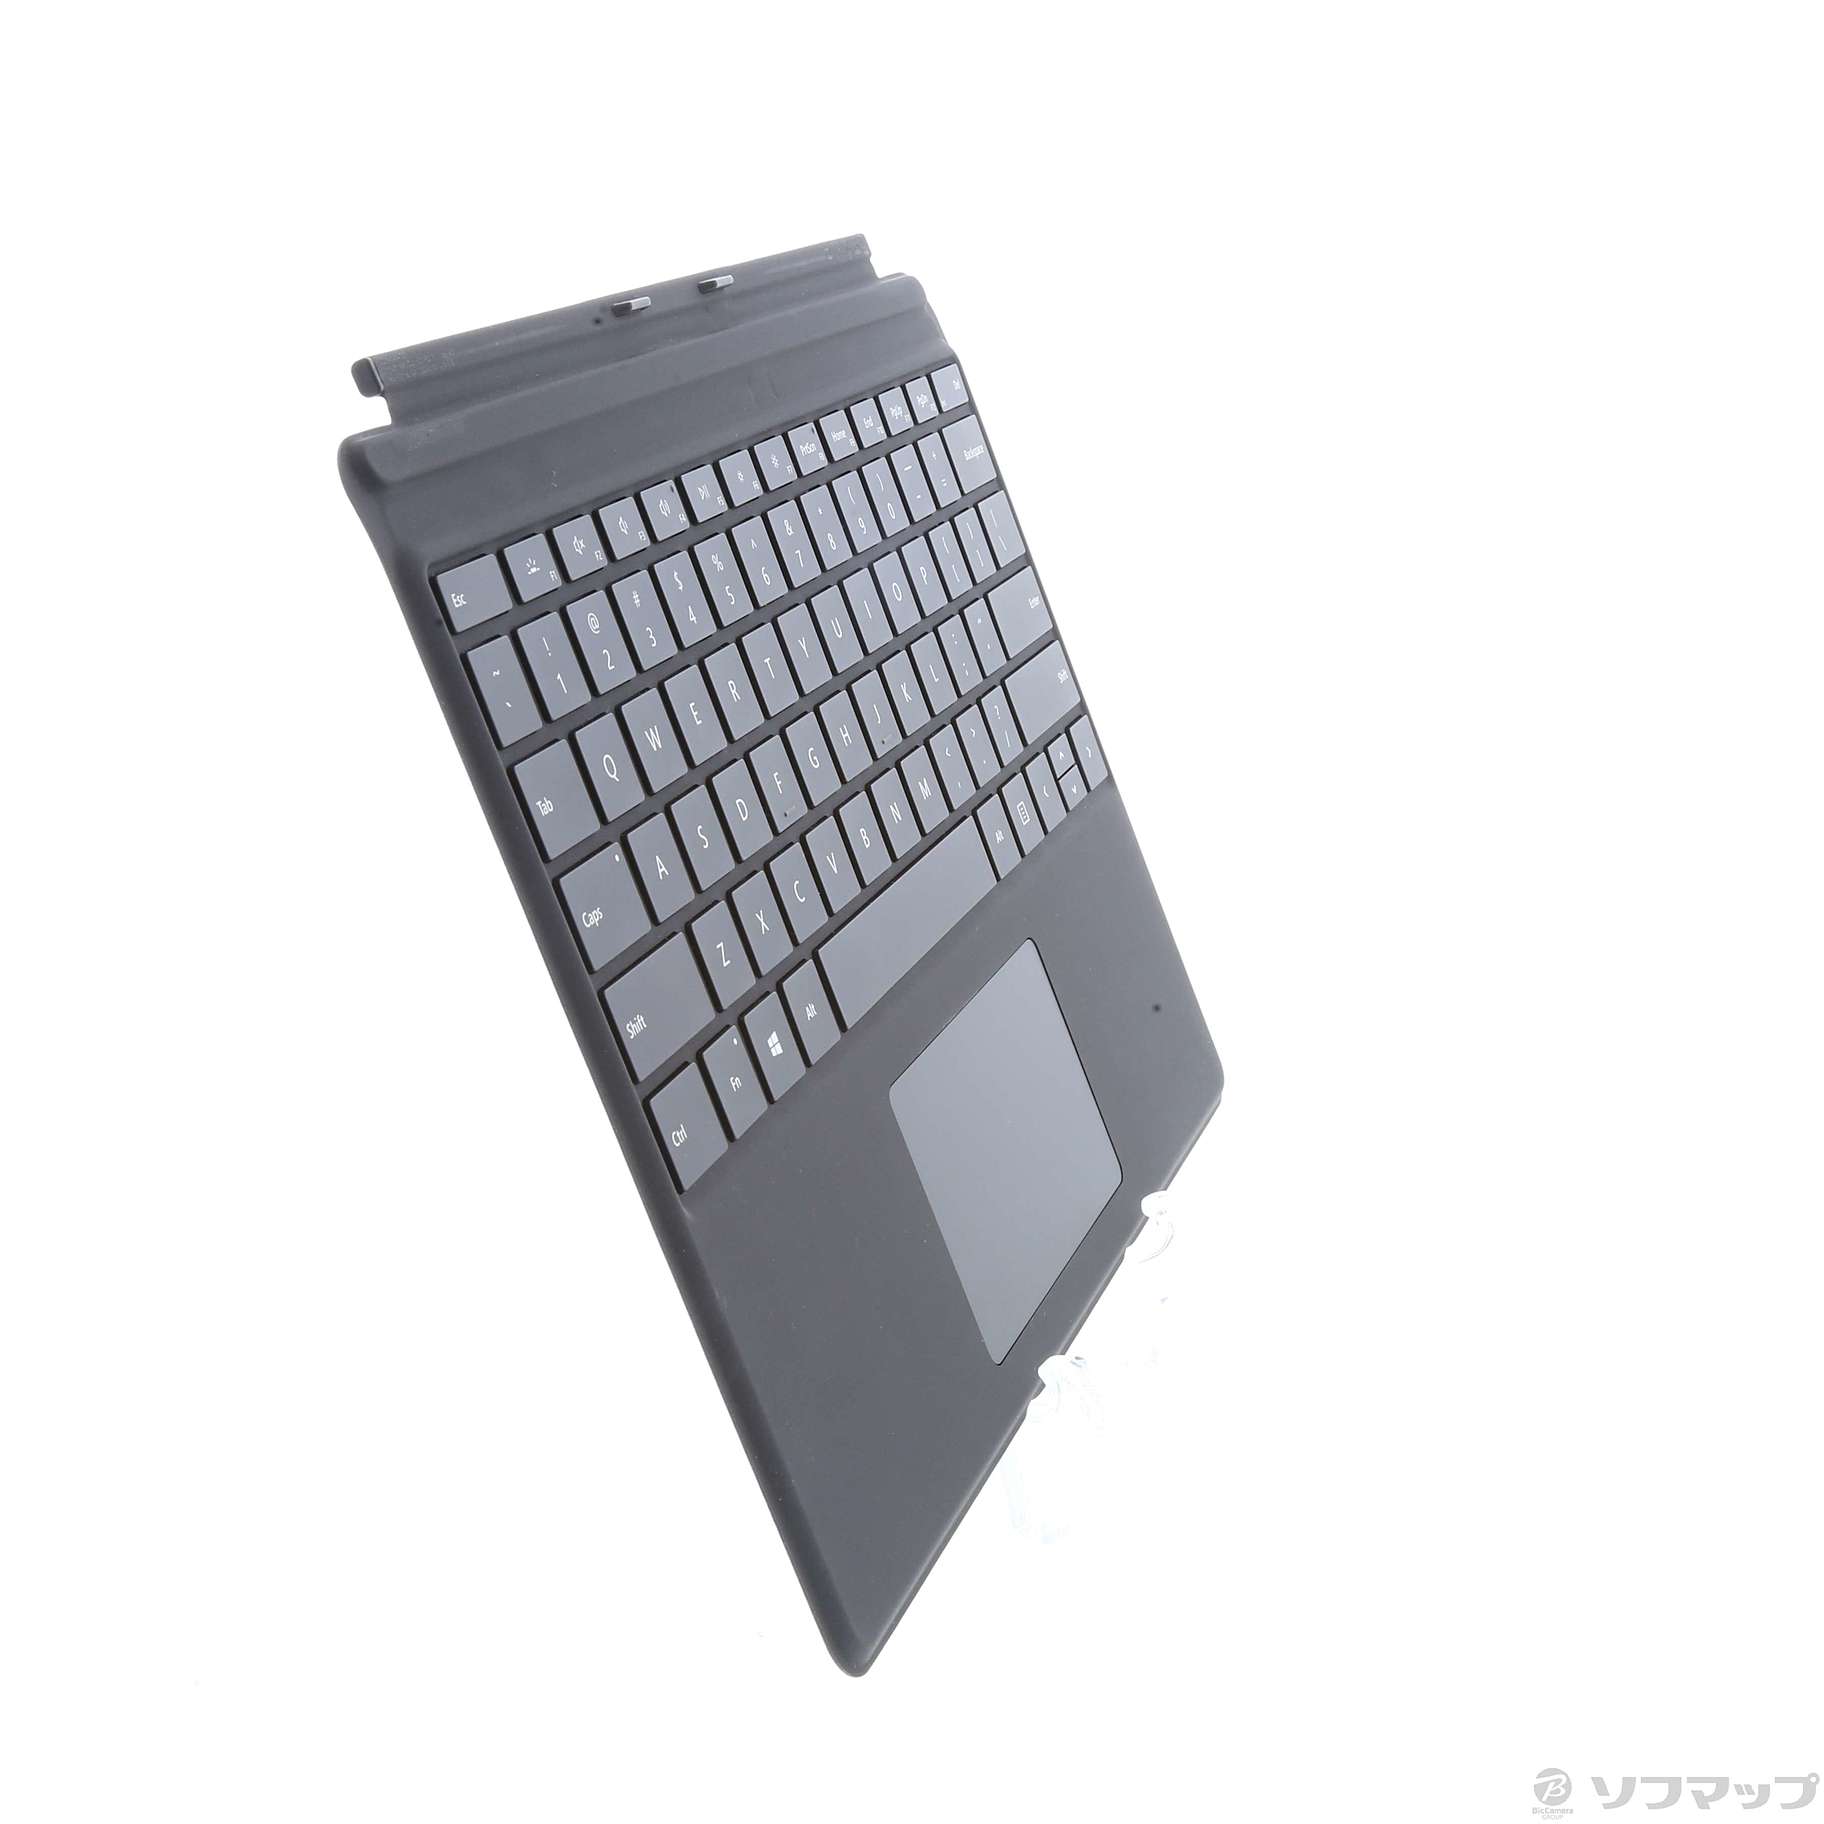 【メーカー公式ショップ】 QJW-00021 Microsoft マイクロソフト Surface Pro X キーボード ブラック 英語配列